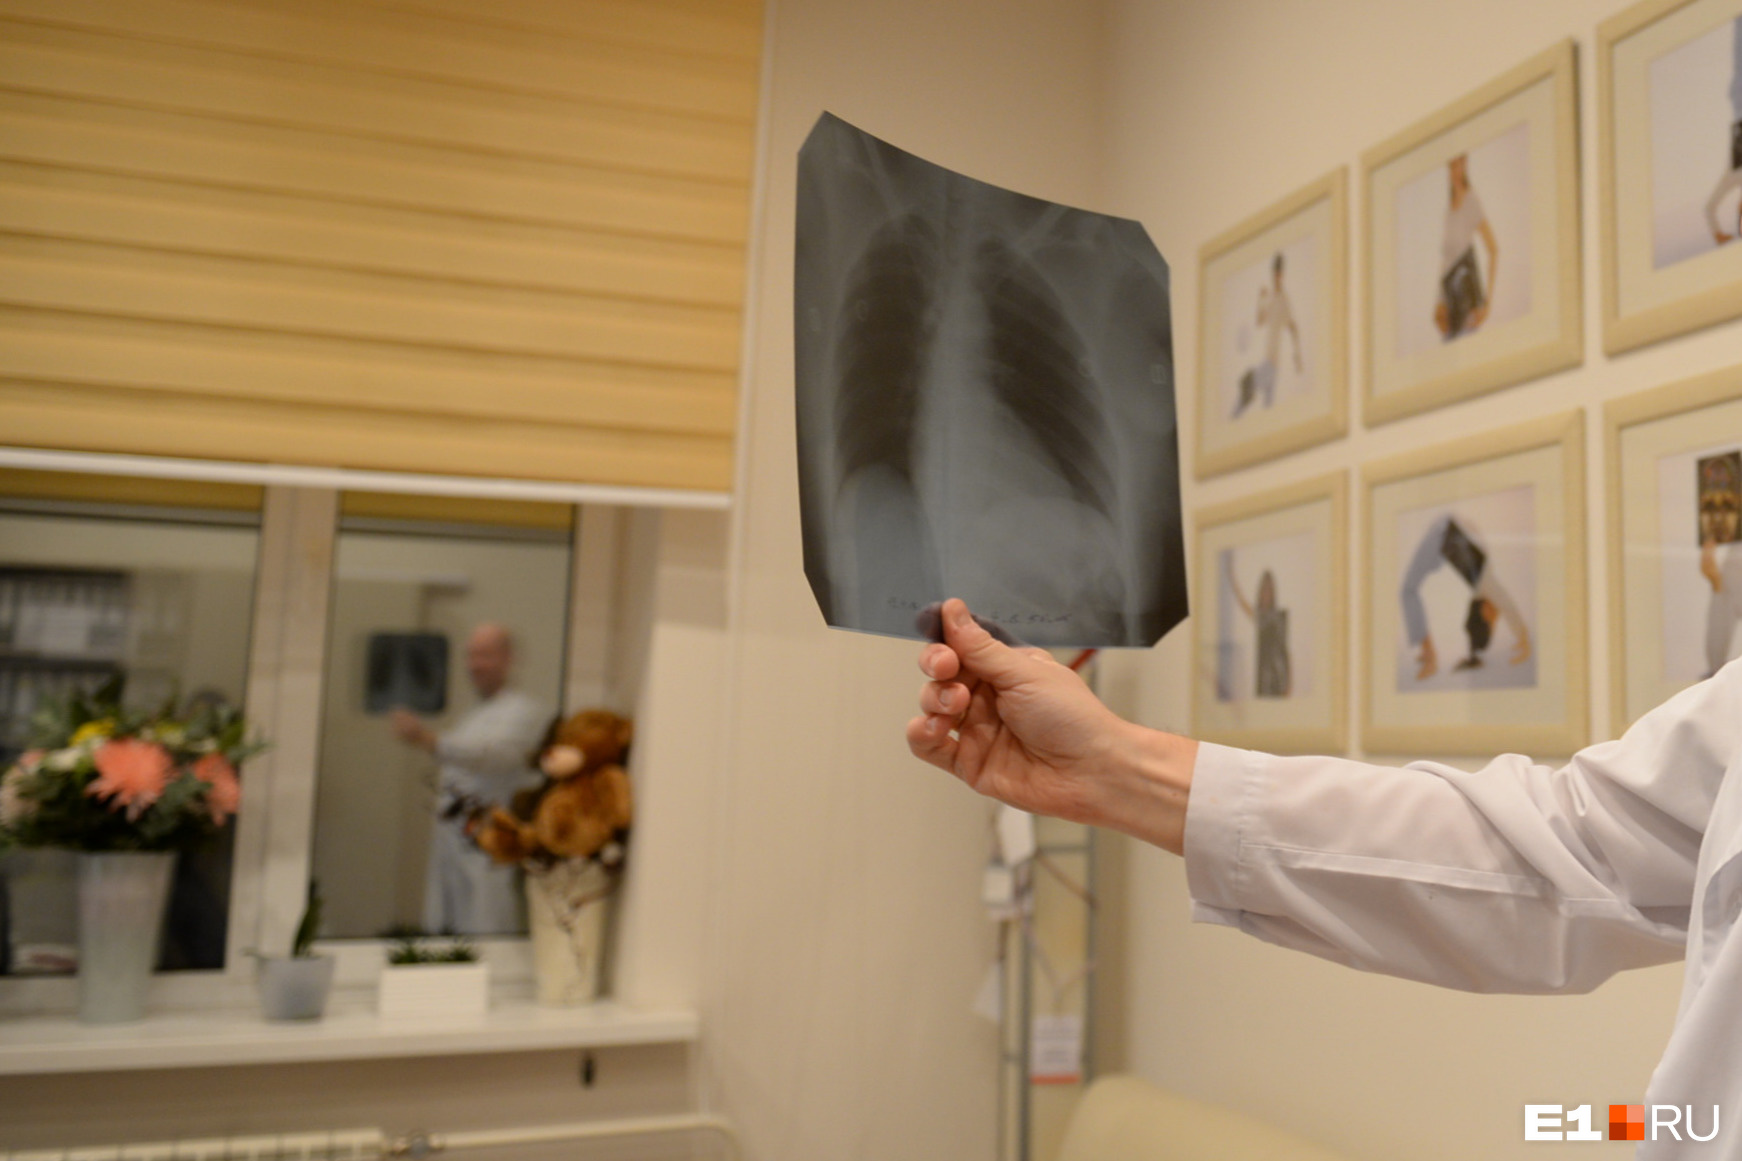 Стоматолог Константин Краснов говорит, что рентгенологи прекрасно читают любые снимки, кроме снимков зубов